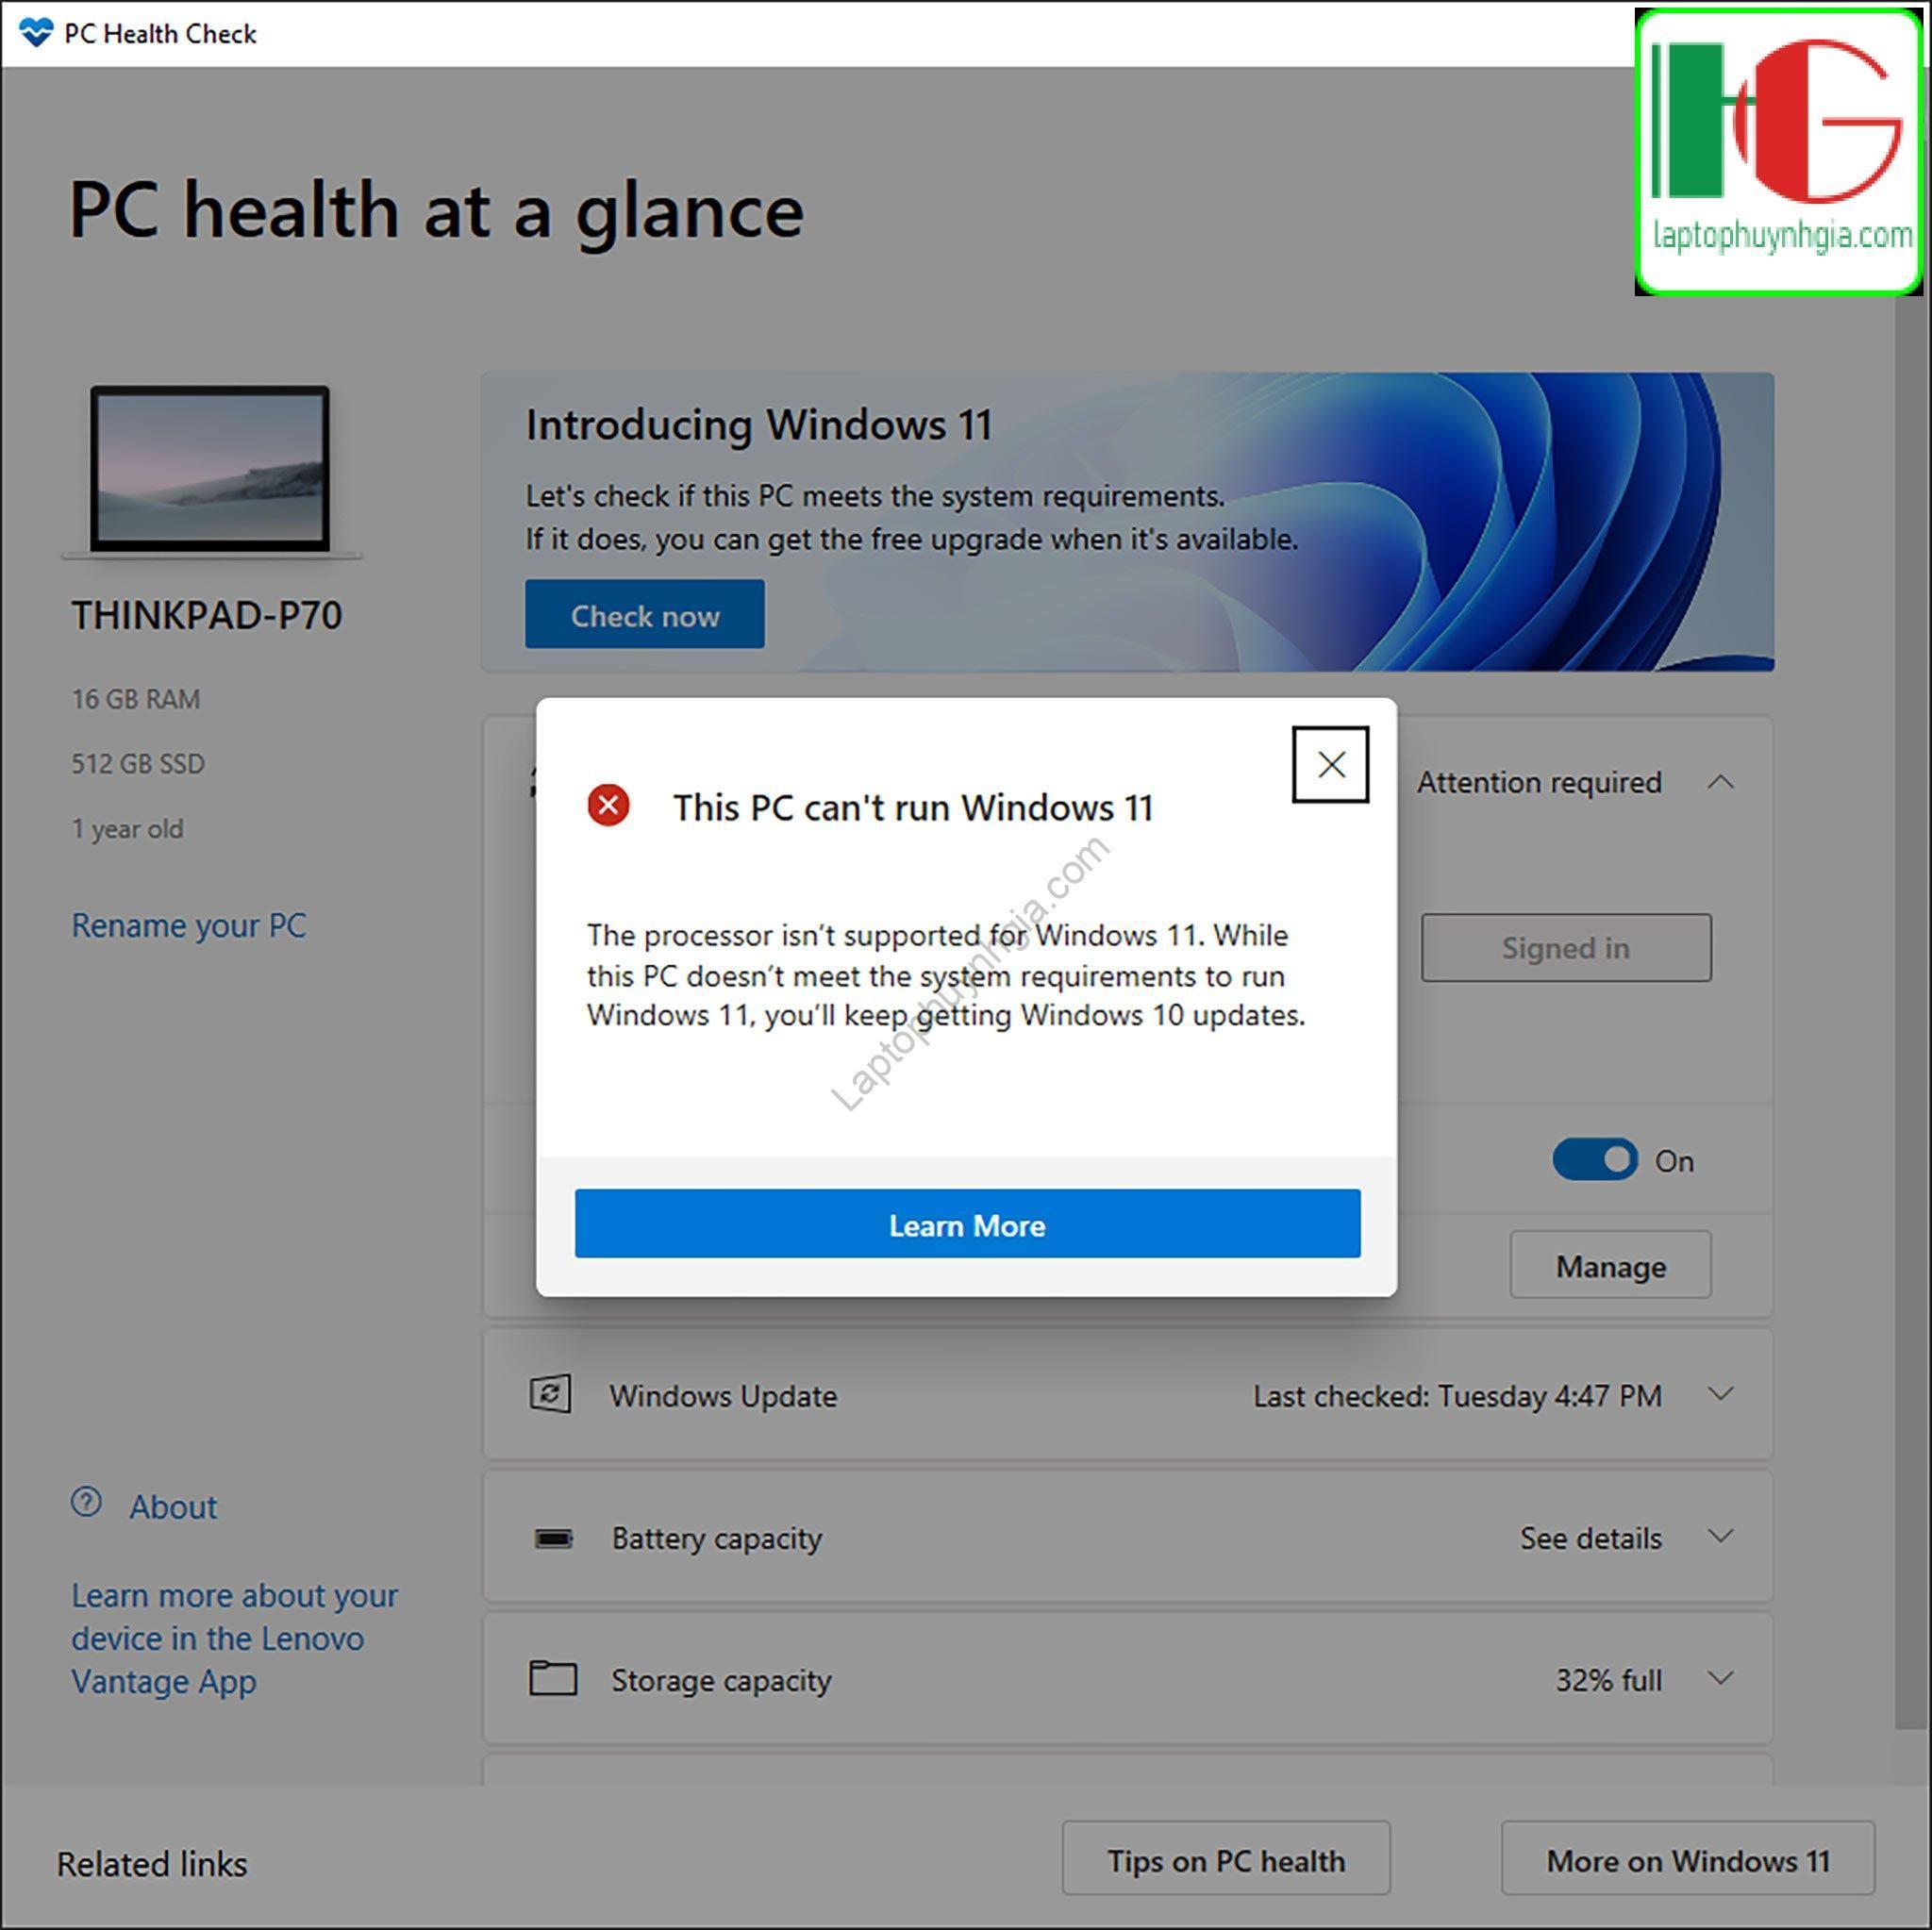 microsoft go pc health check anh huong cap nhat windows 11 9557 1 - Laptop Cũ Bình Dương Huỳnh Gia